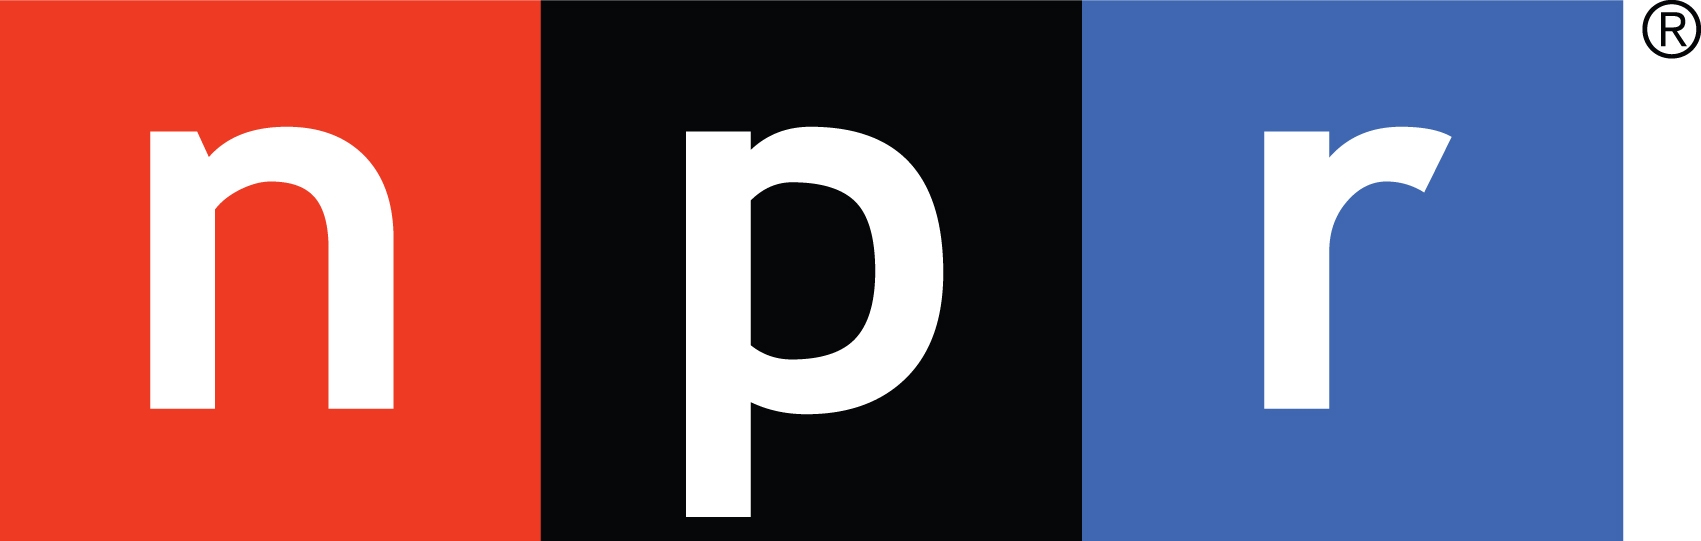 Logotipo de la NPR